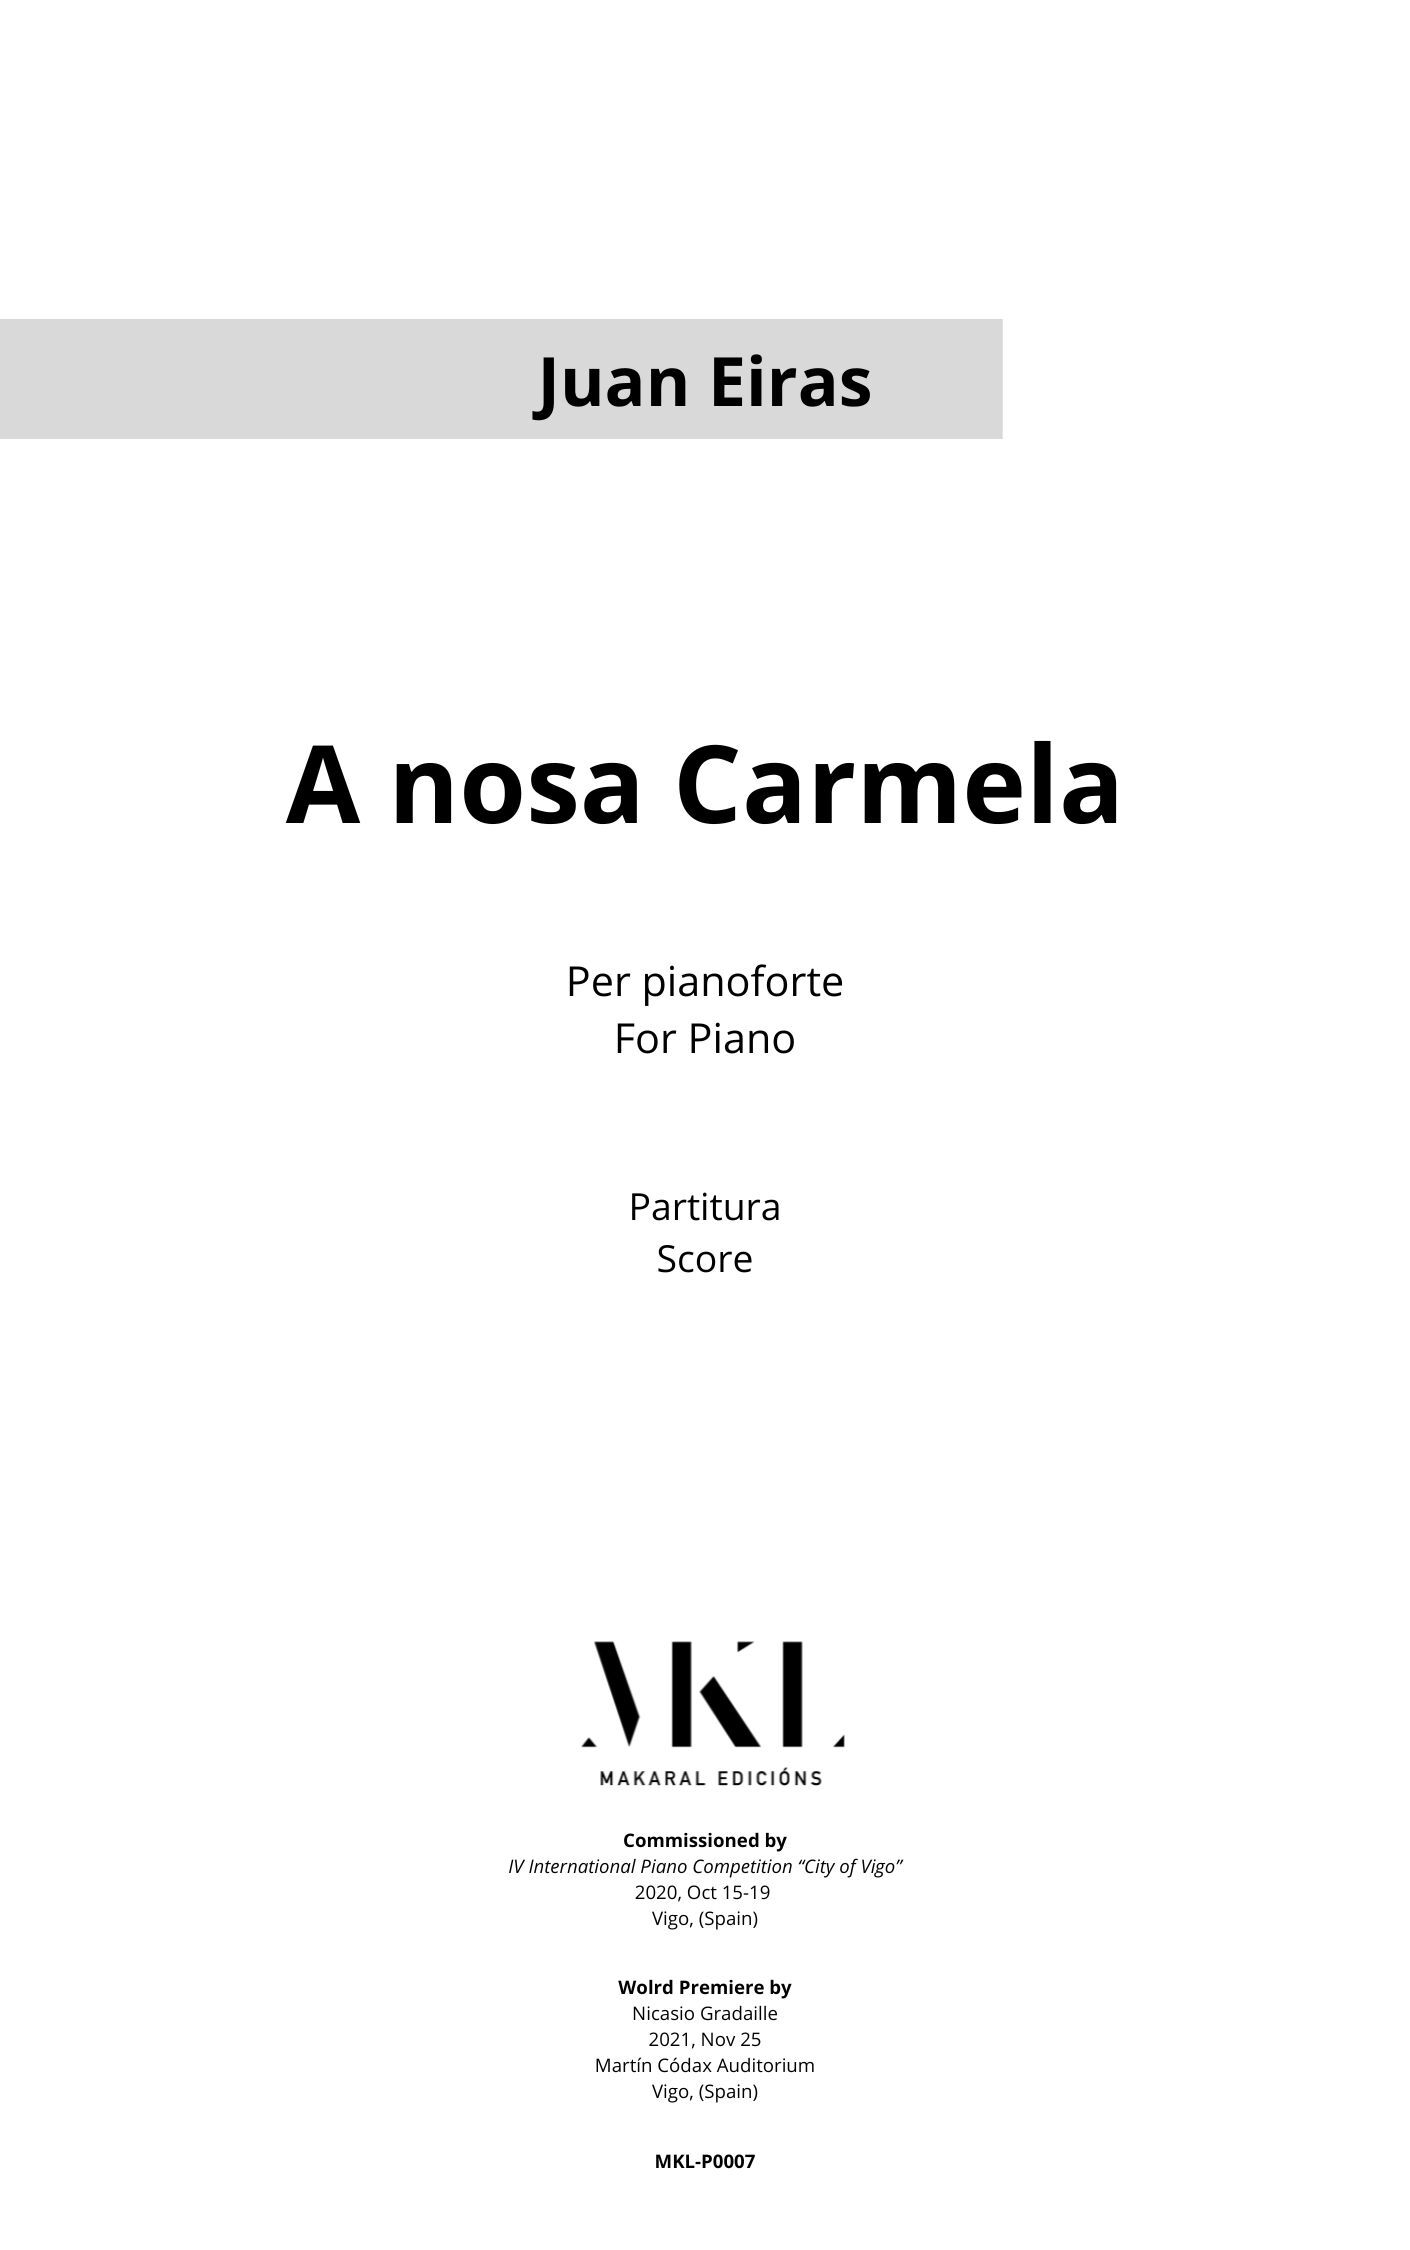 <p translate="no">"A nosa Carmela"<p>